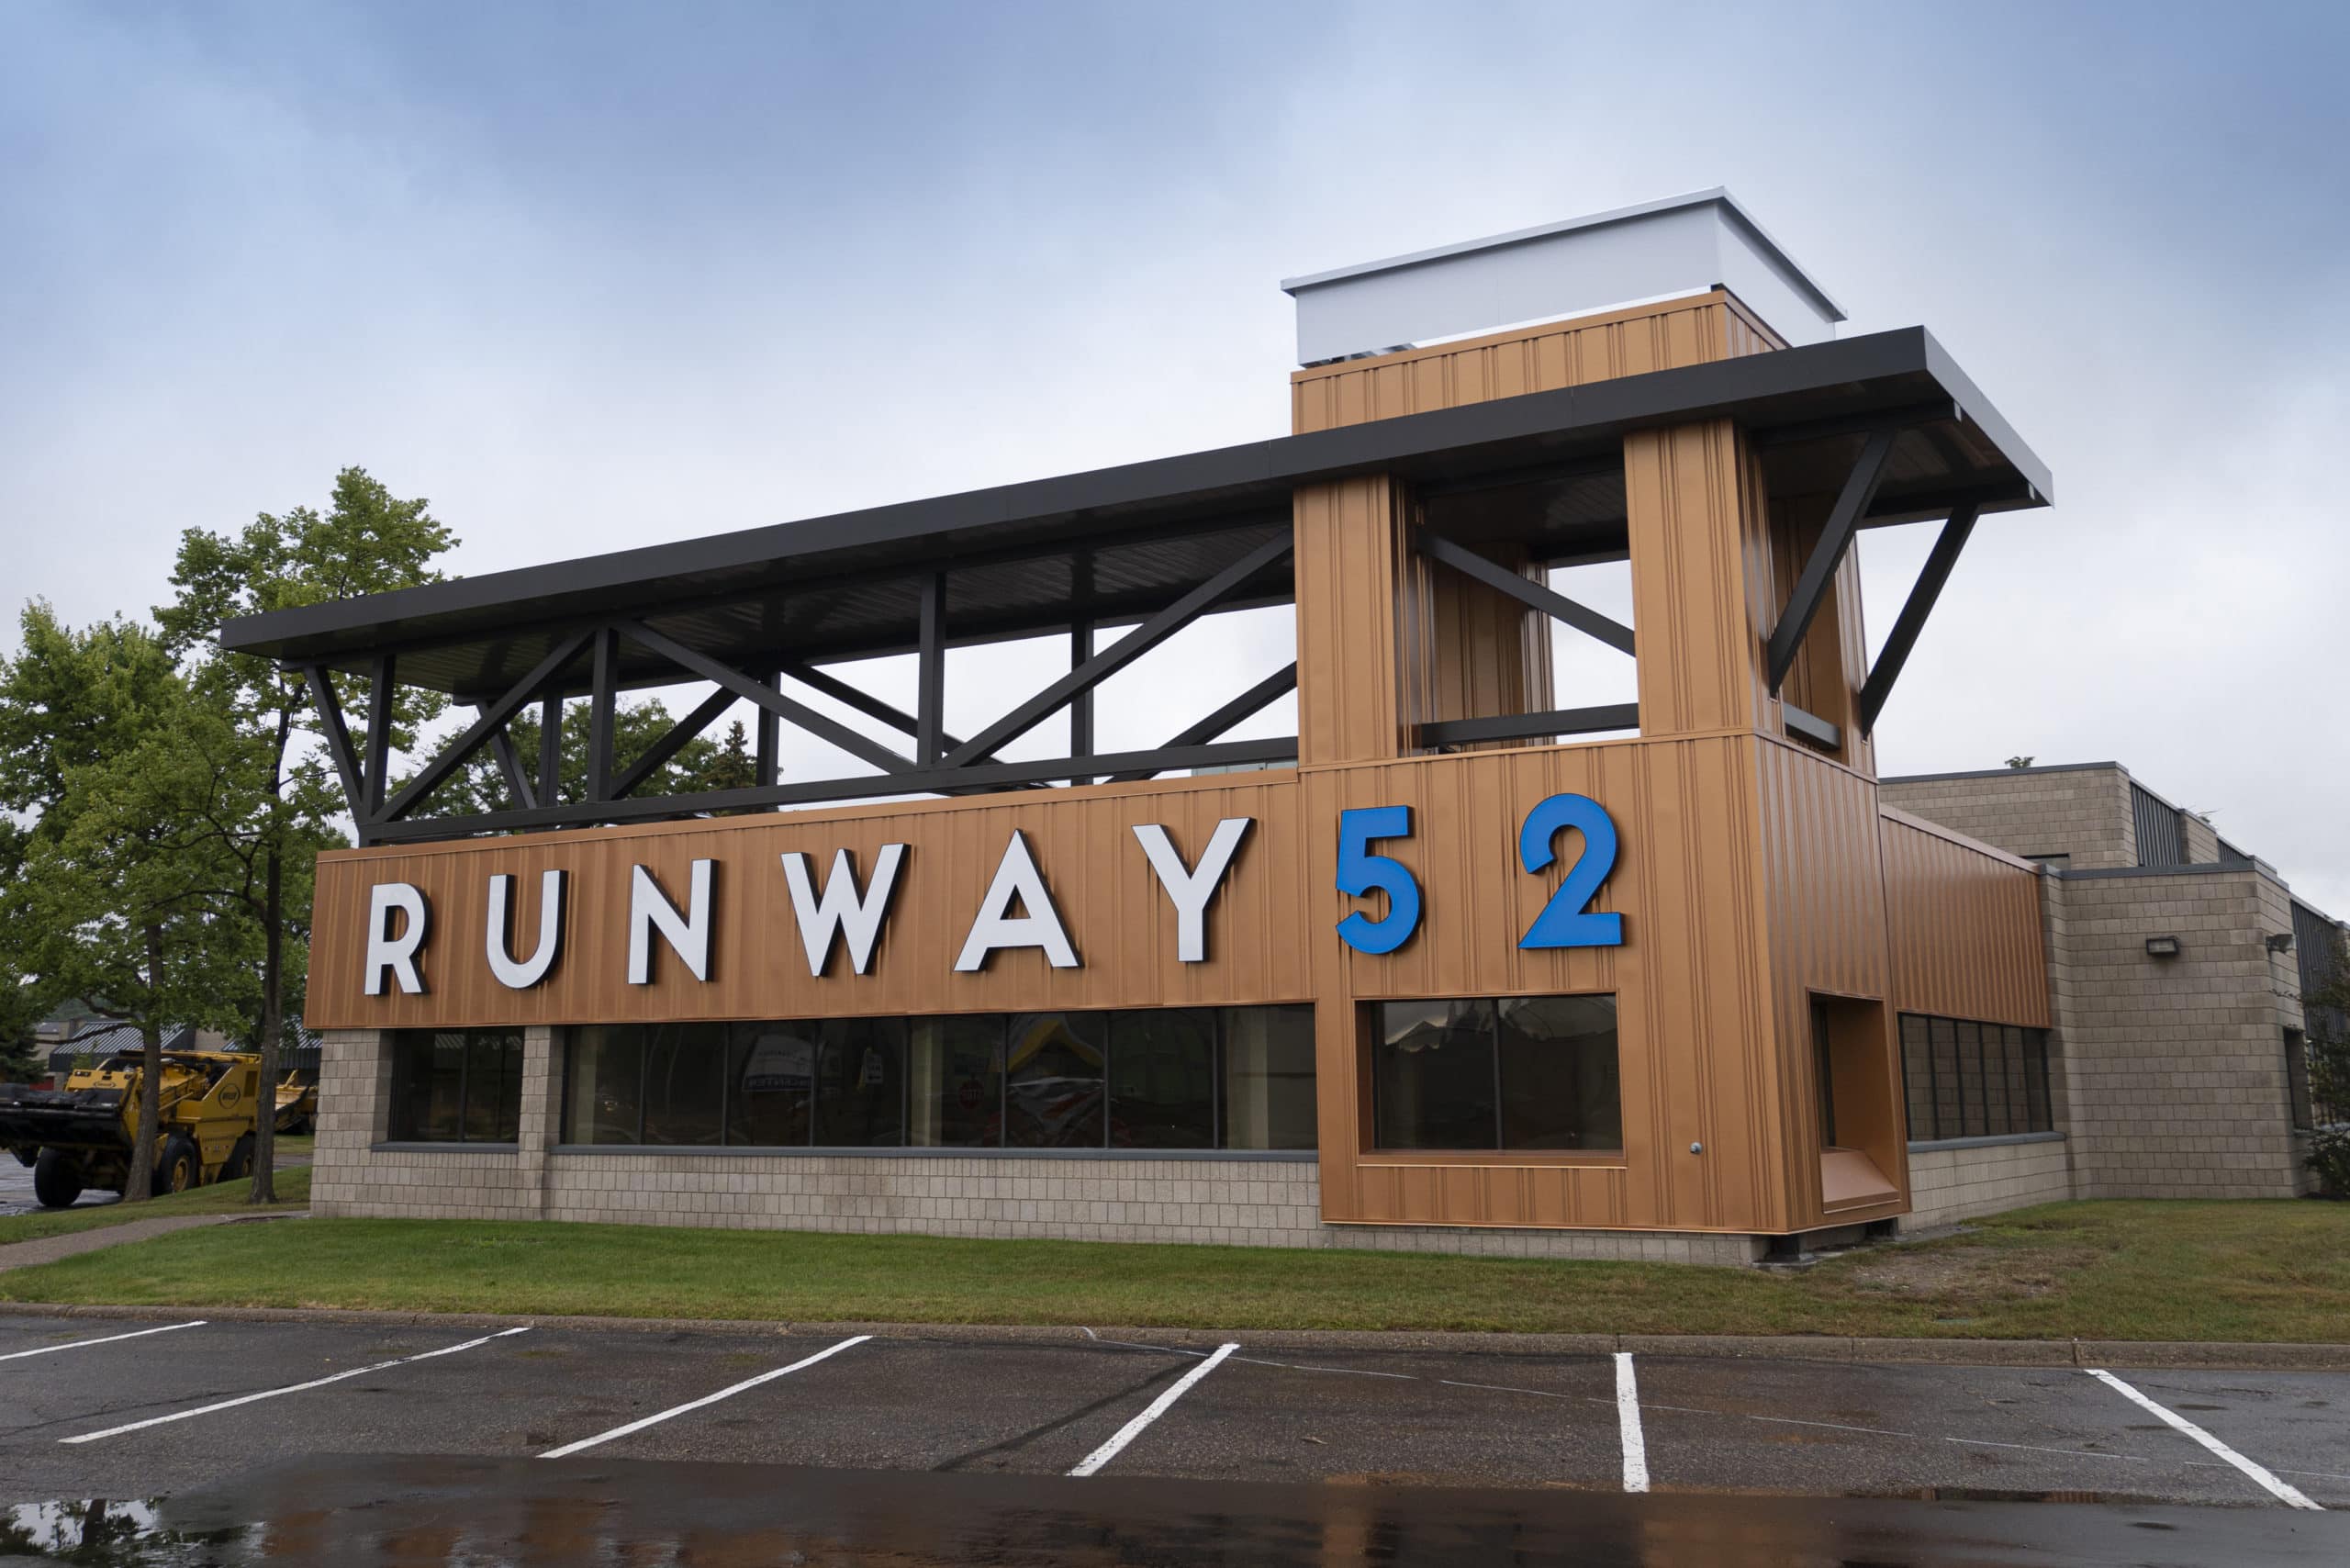 Runway 52 sign